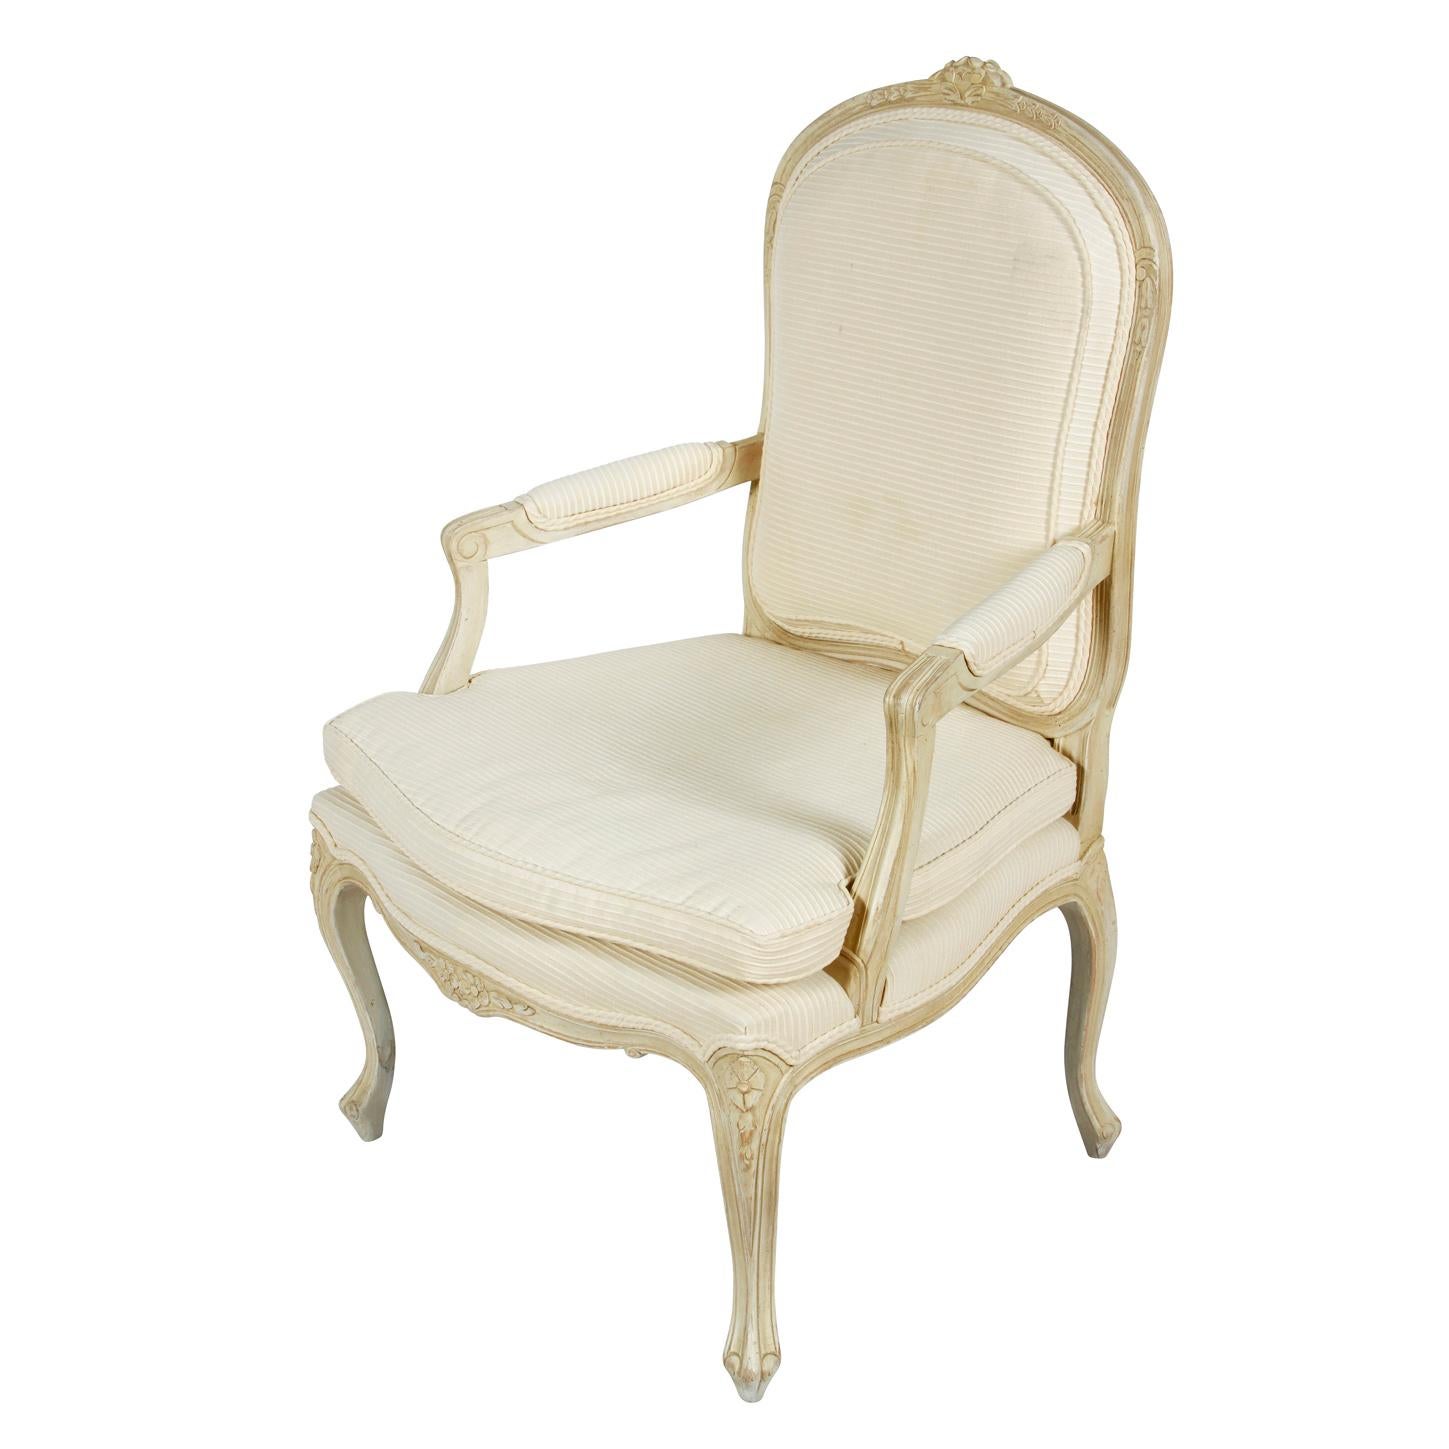 Ein Paar elfenbeinfarbene und bemalte französische Bergeres-Stühle.  Die Armlehnstühle im Louis XV-Stil sind antik-weiß lackiert und mit floralen Details an der Stuhllehne, der Schürze und den Kabriole-Beinen verziert.  Die Stühle sind an der